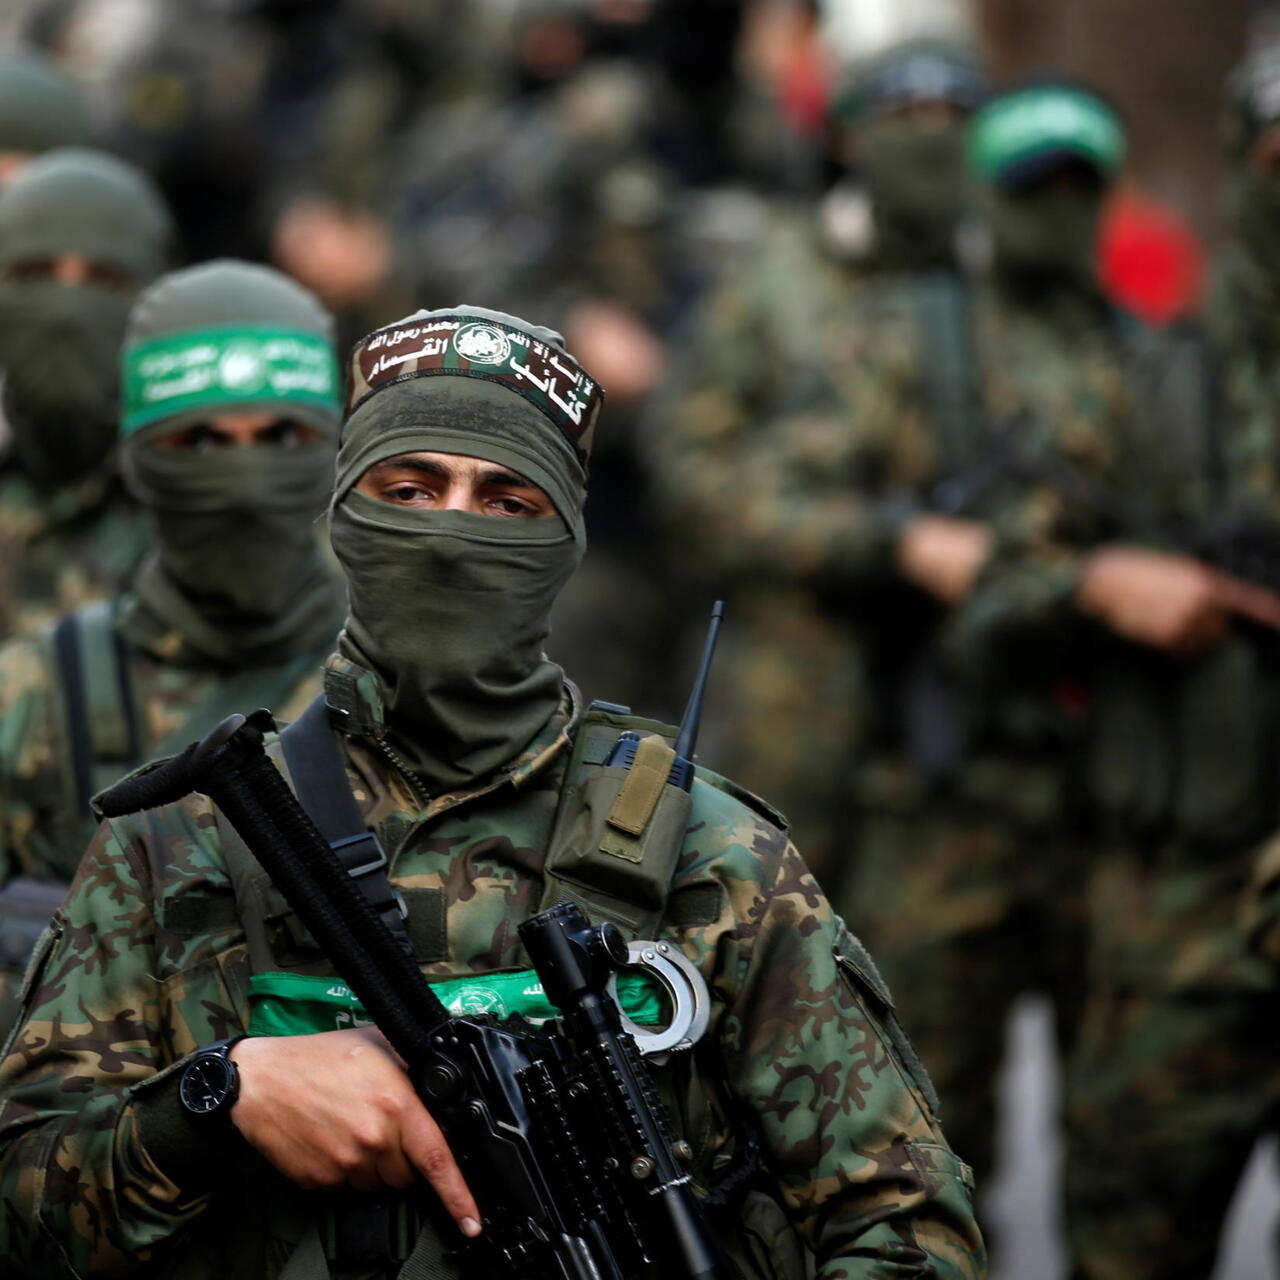 "Israel still hasn't met our demands" -- Hamas